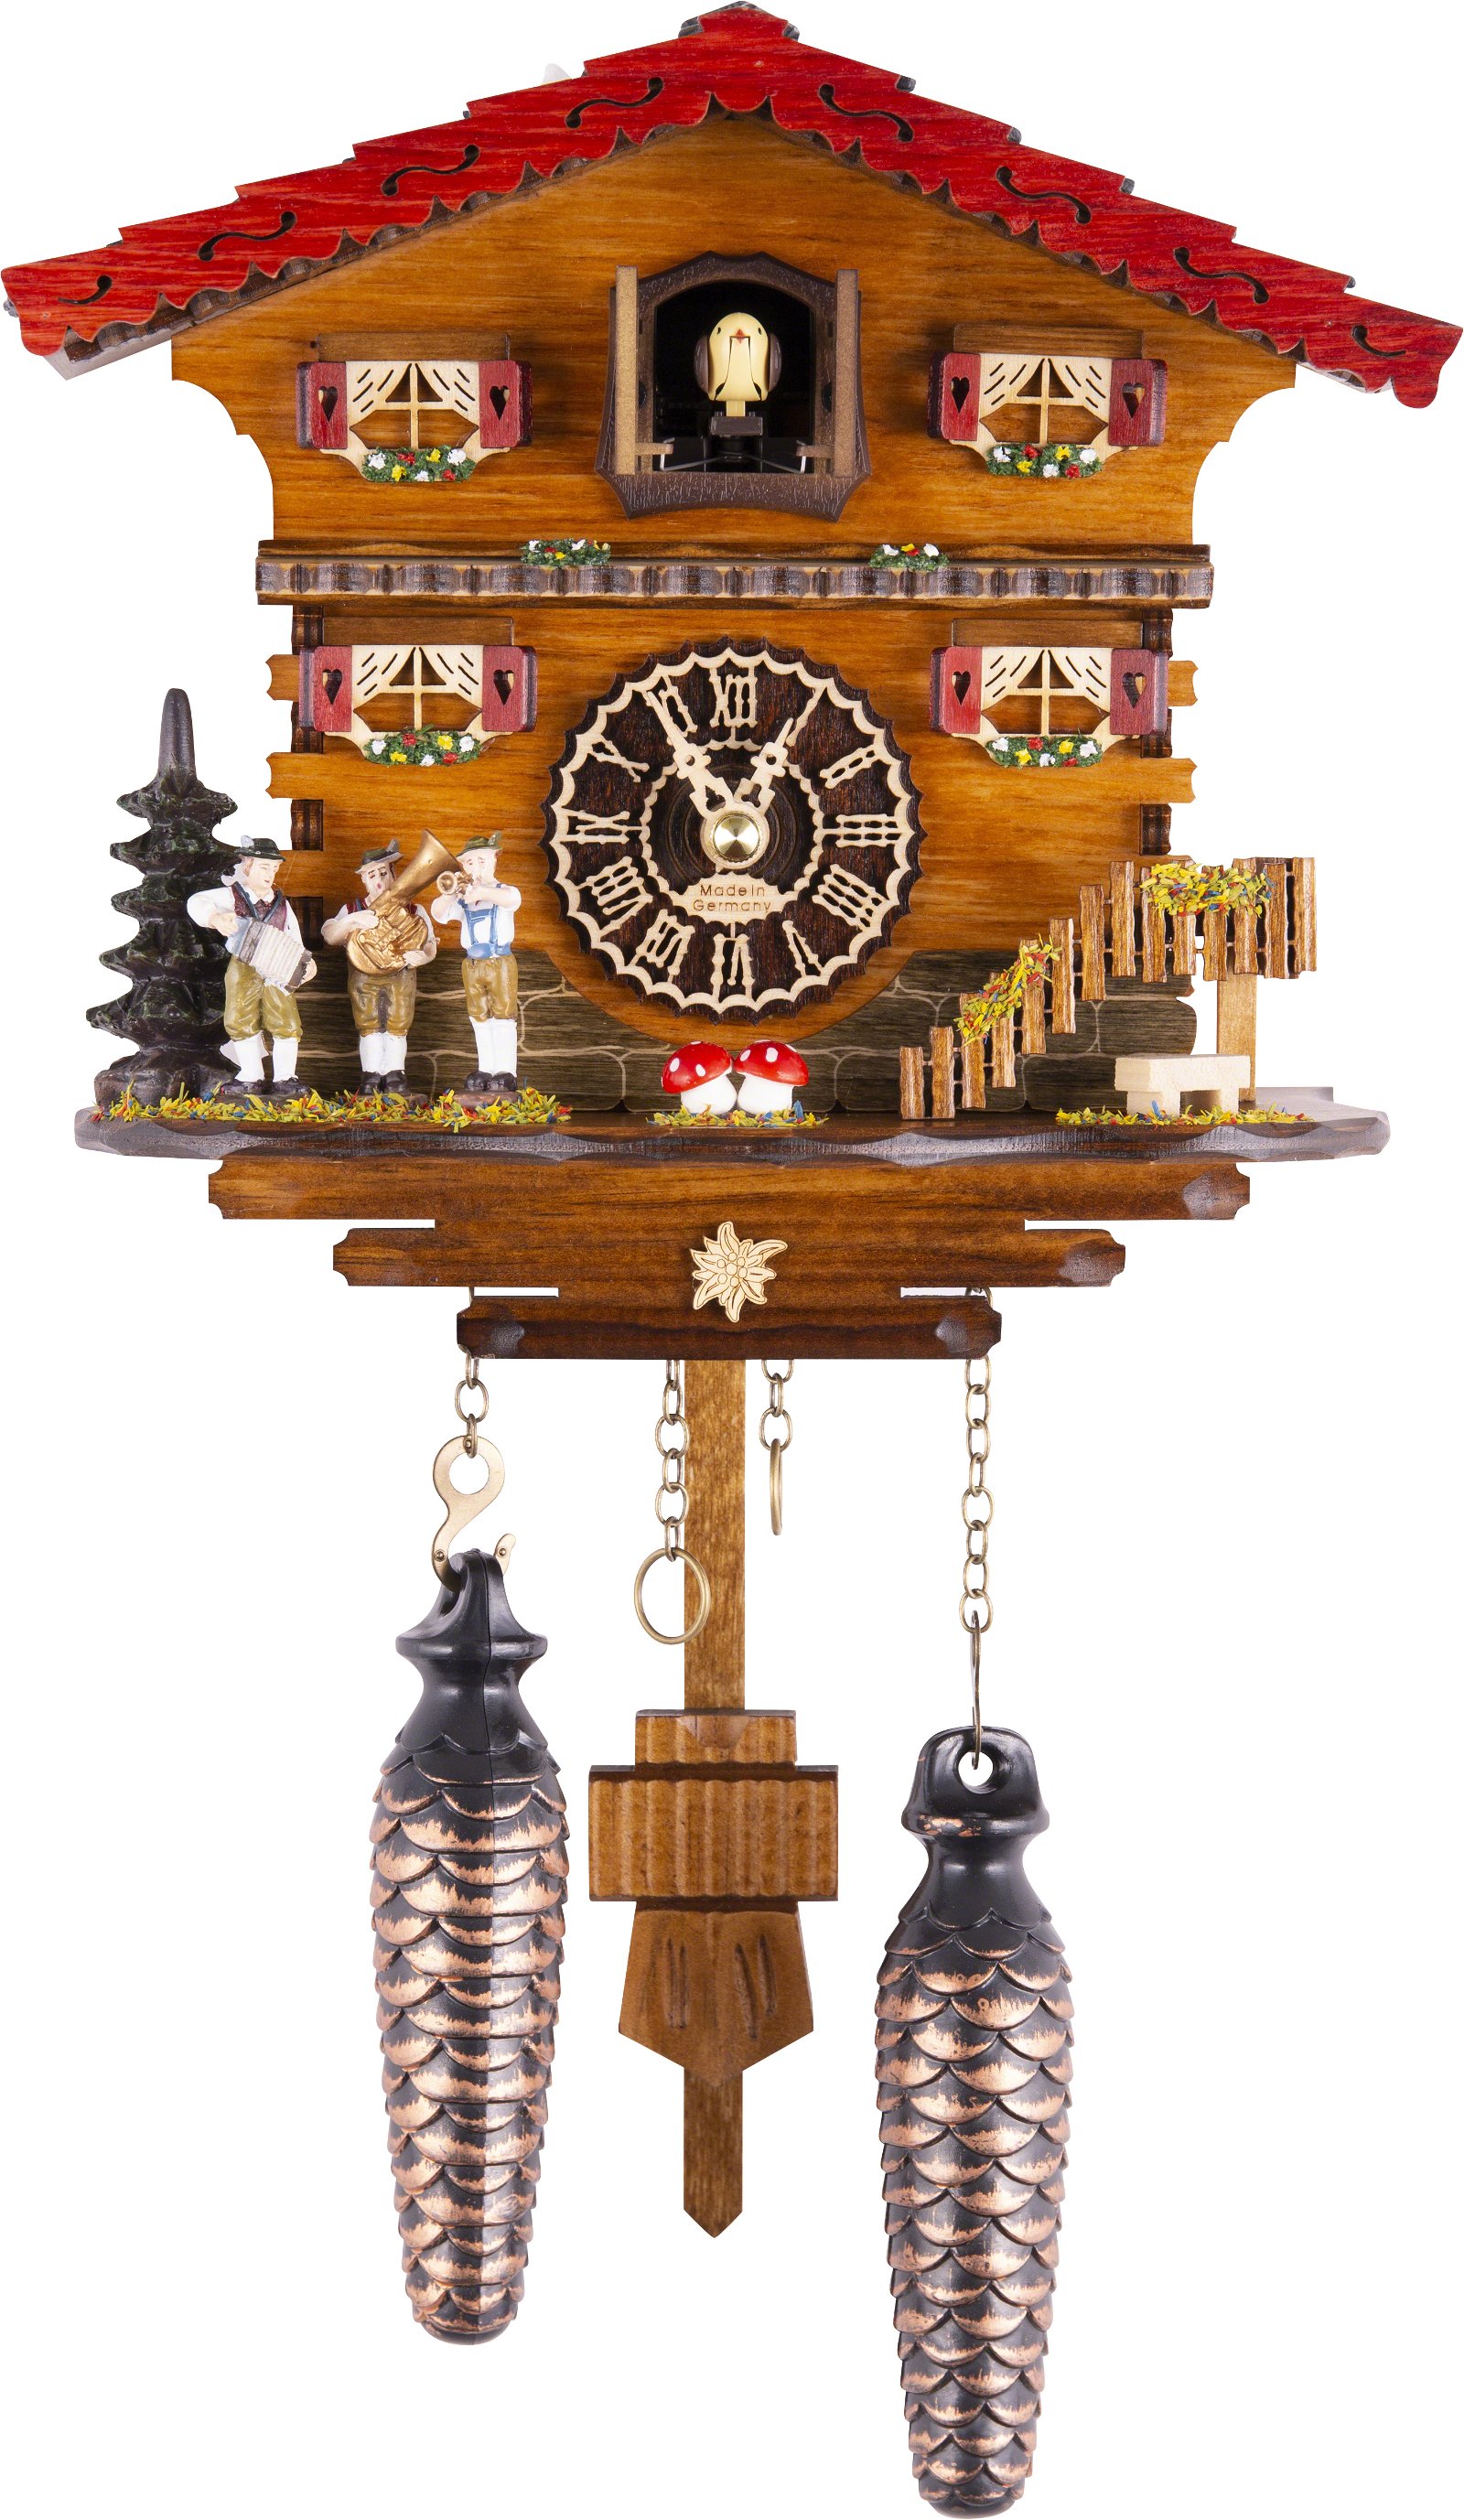 Kuckucksuhr Quarz-Uhrwerk Chalet-Stil 19cm von Trenkle Uhren